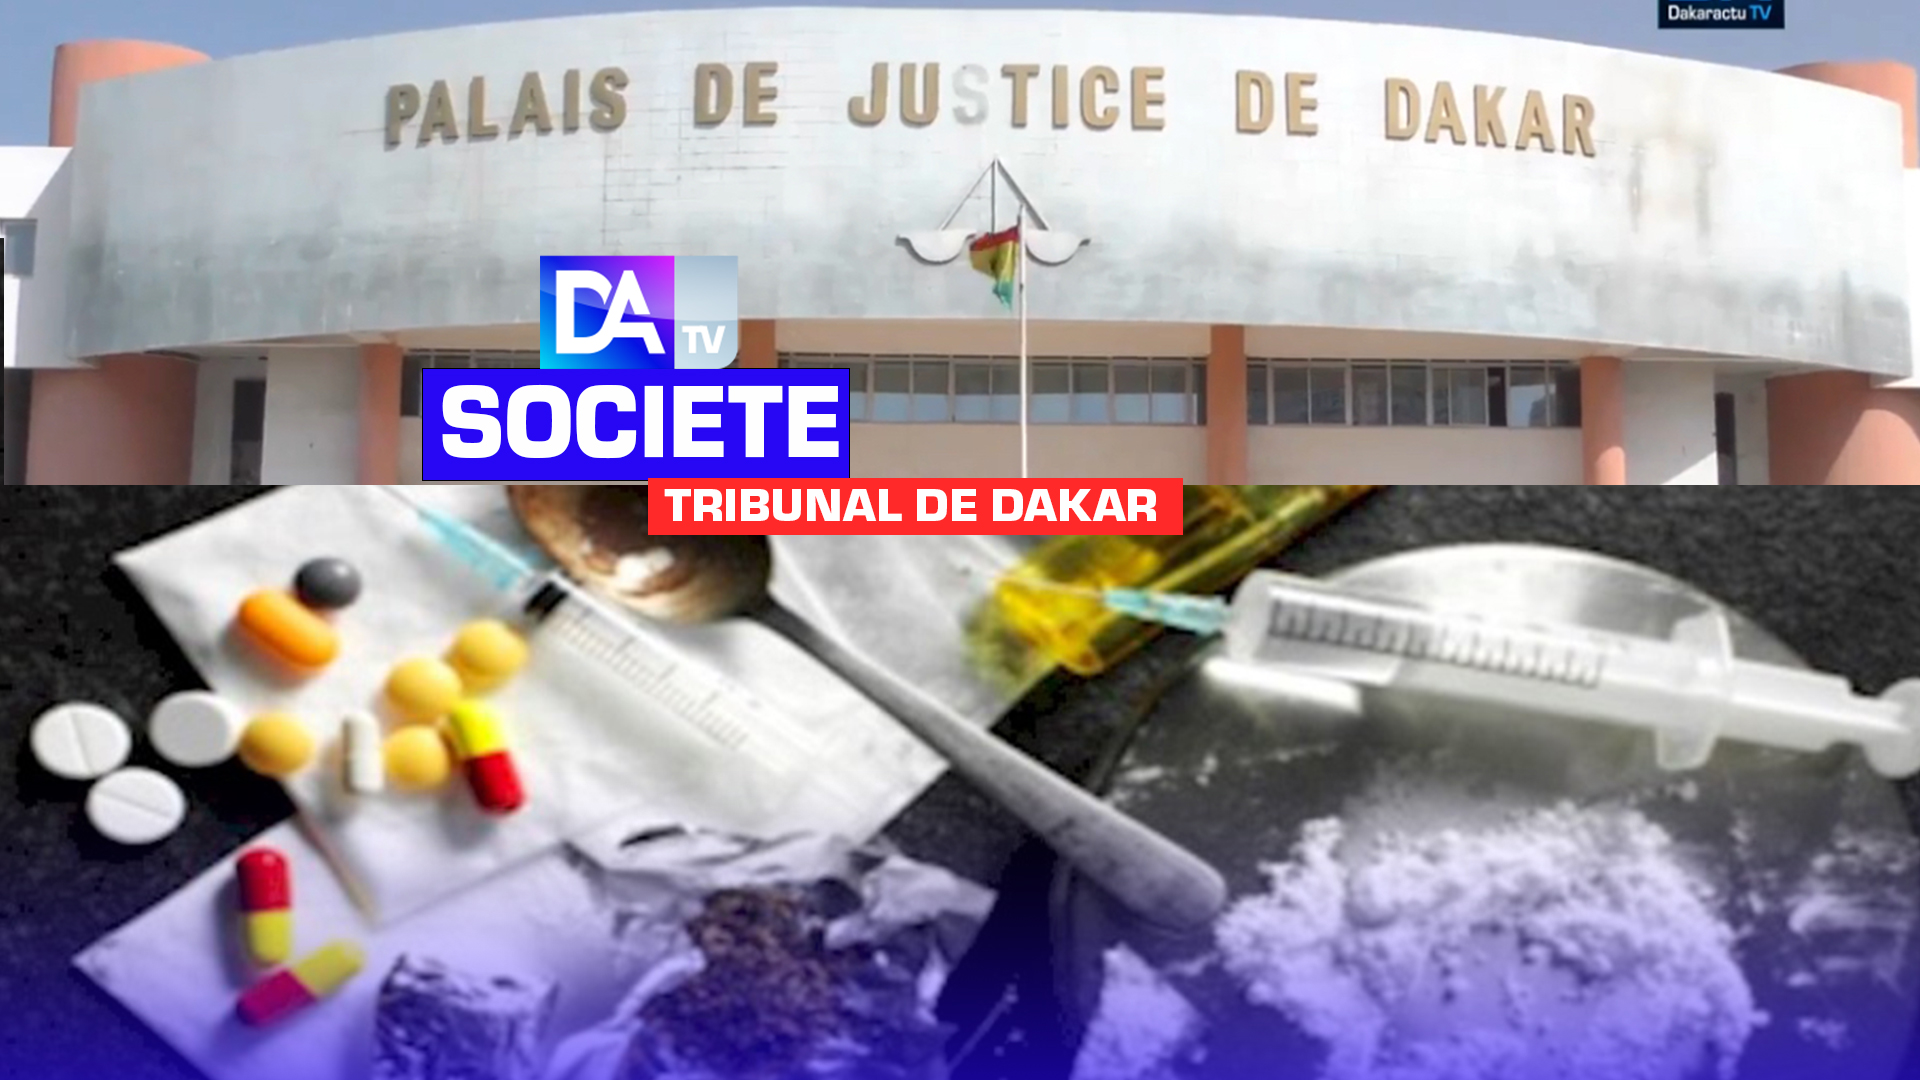 Palais de justice : Pris avec 13 grammes de hachis, les jeunes M. Diallo et A. Sylla bénéficie d’une relaxe